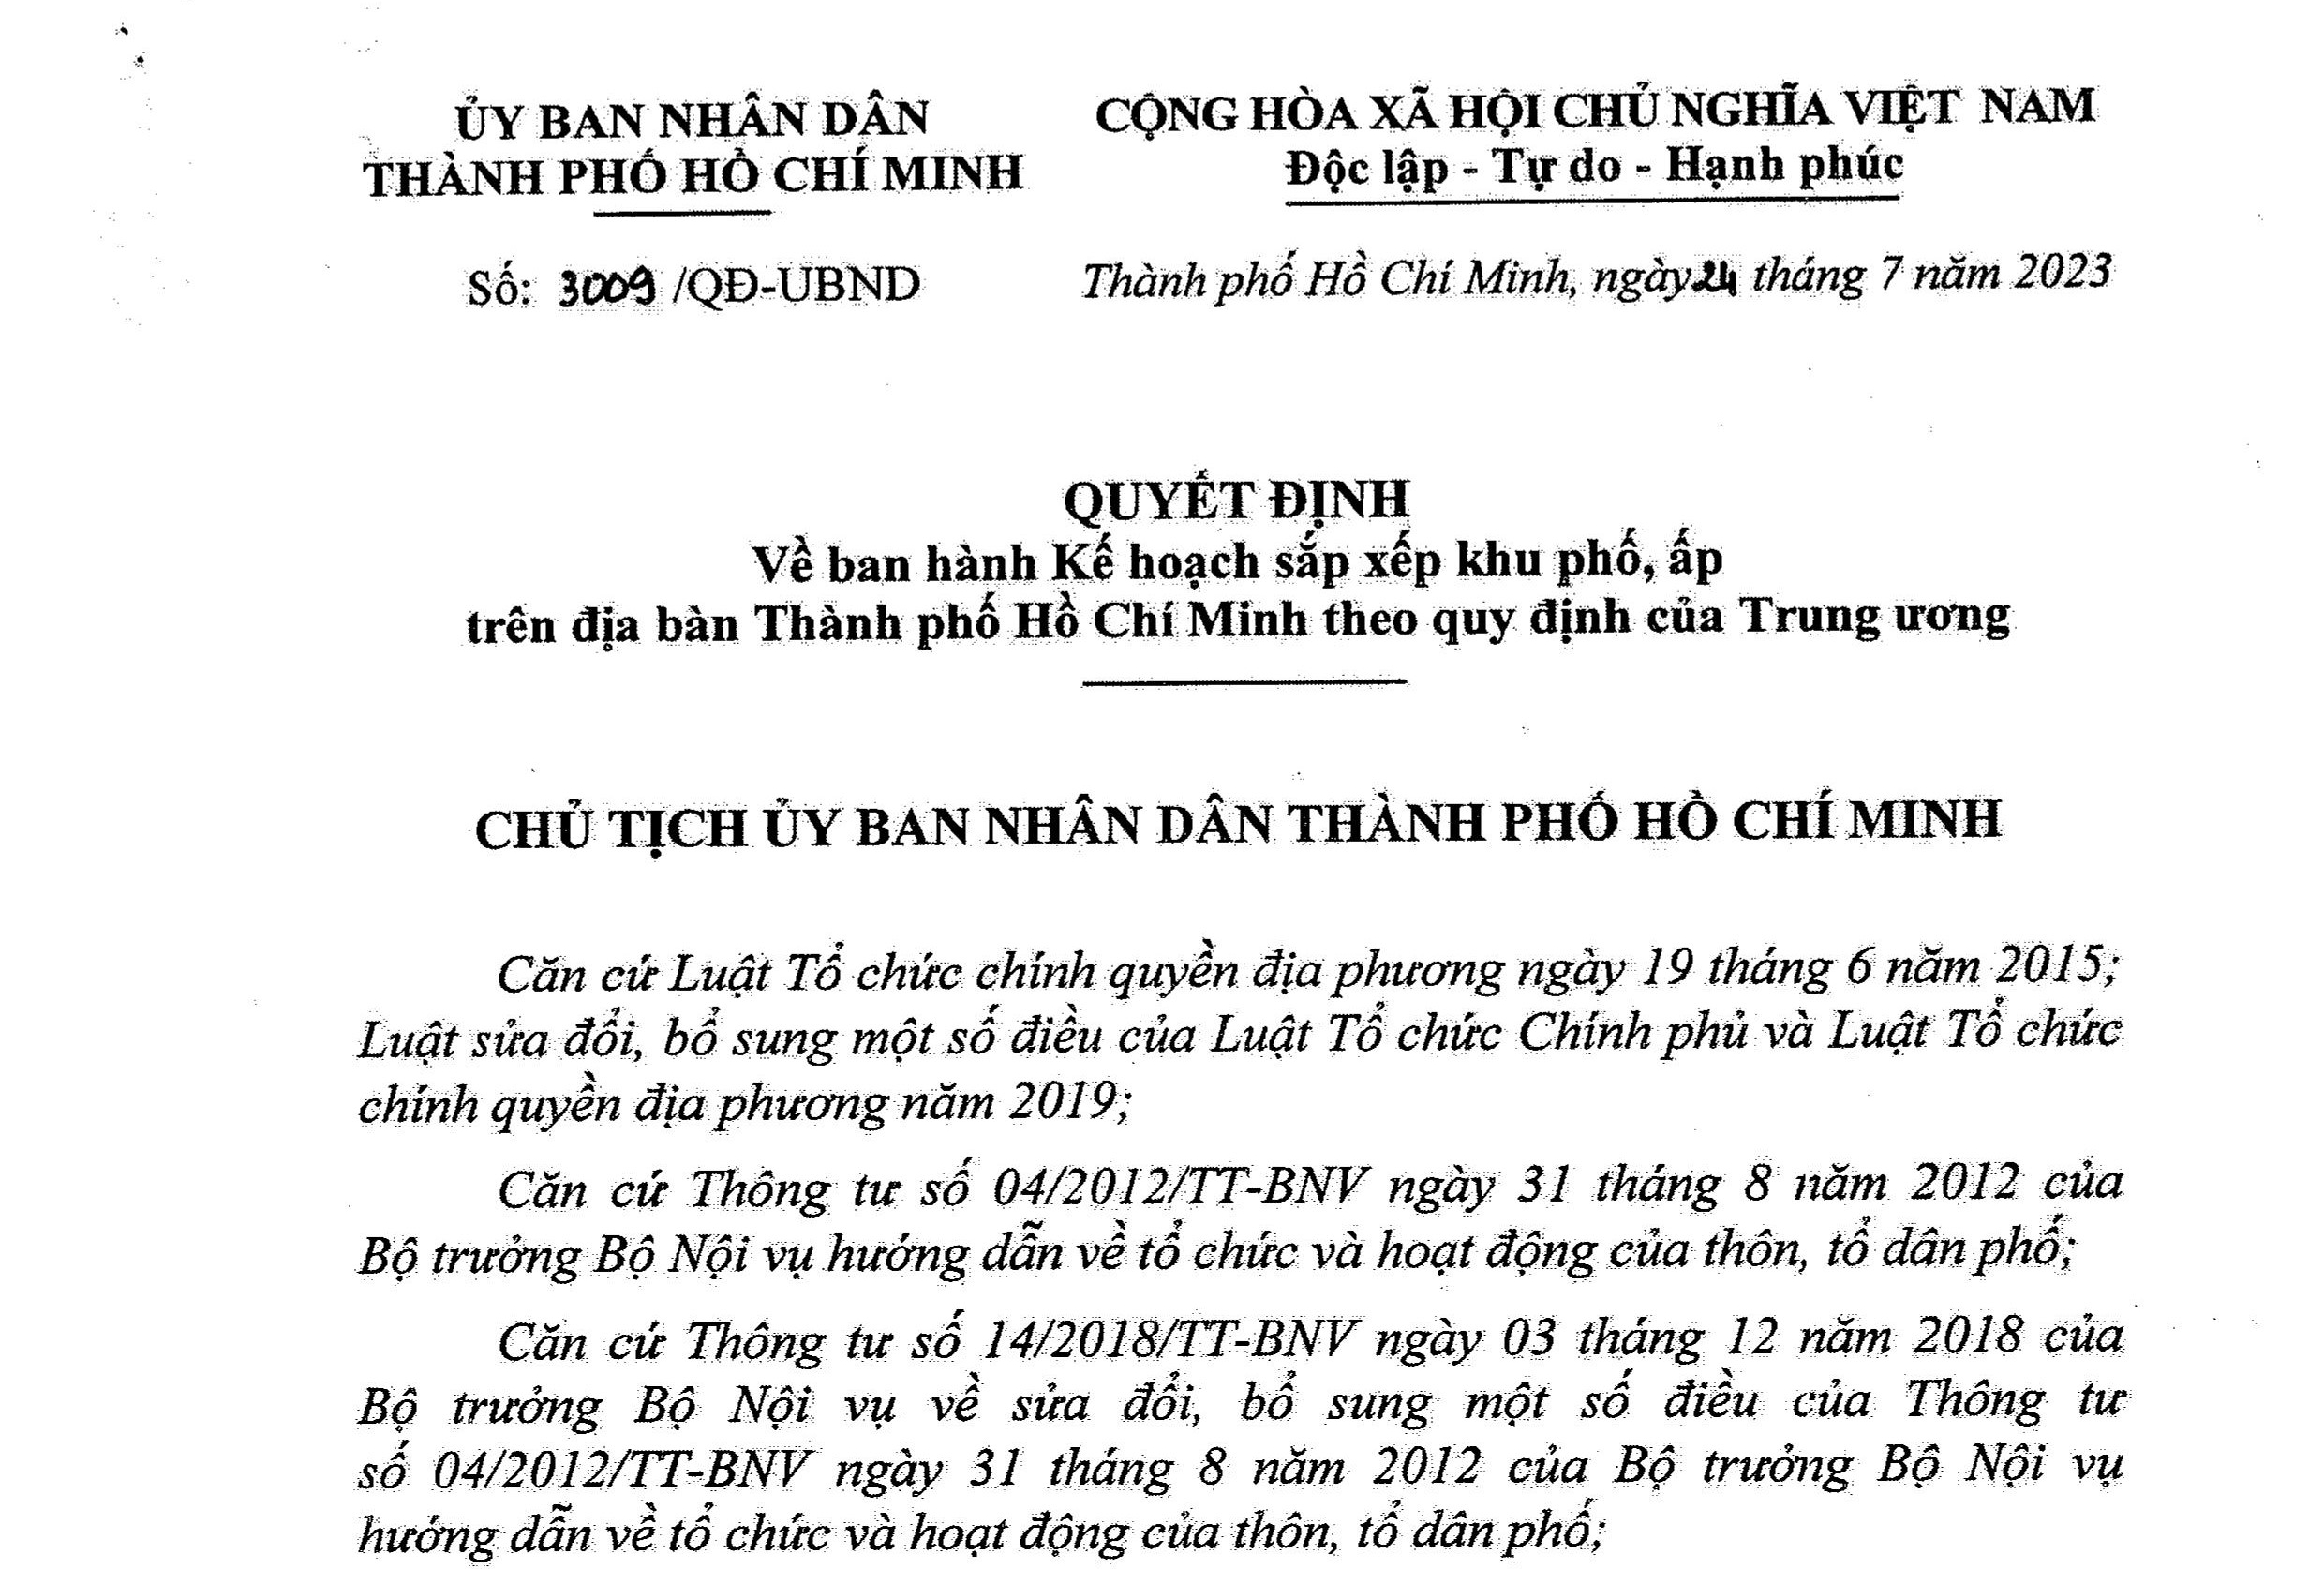 Thành phố Hồ Chí Minh chính thức ban hành kế hoạch sắp xếp khu phố, ấp